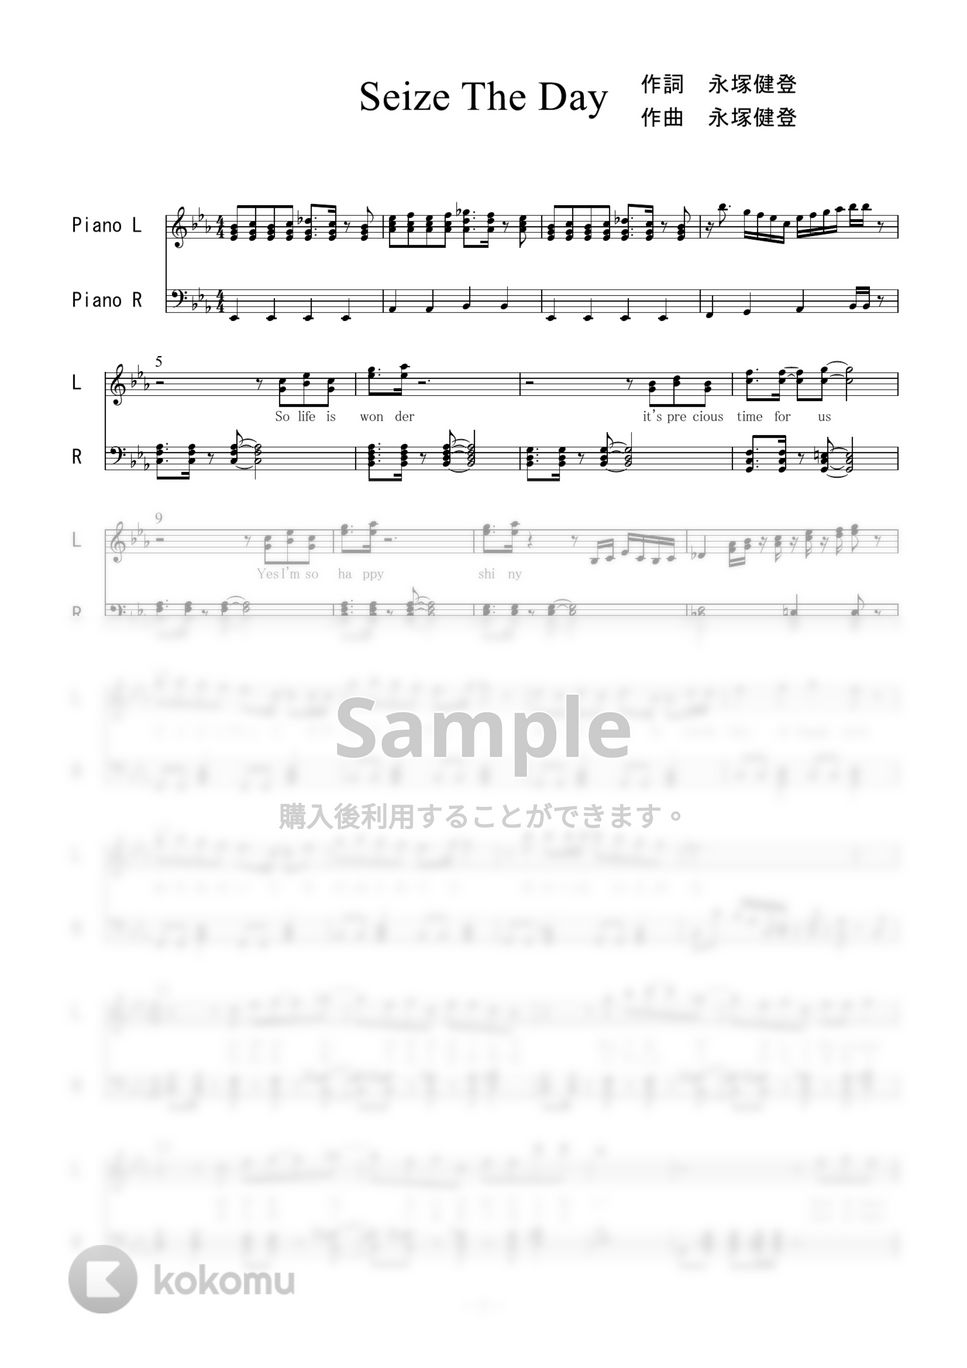 亜咲花 - Seize The Day (ピアノソロ) by 二次元楽譜製作所